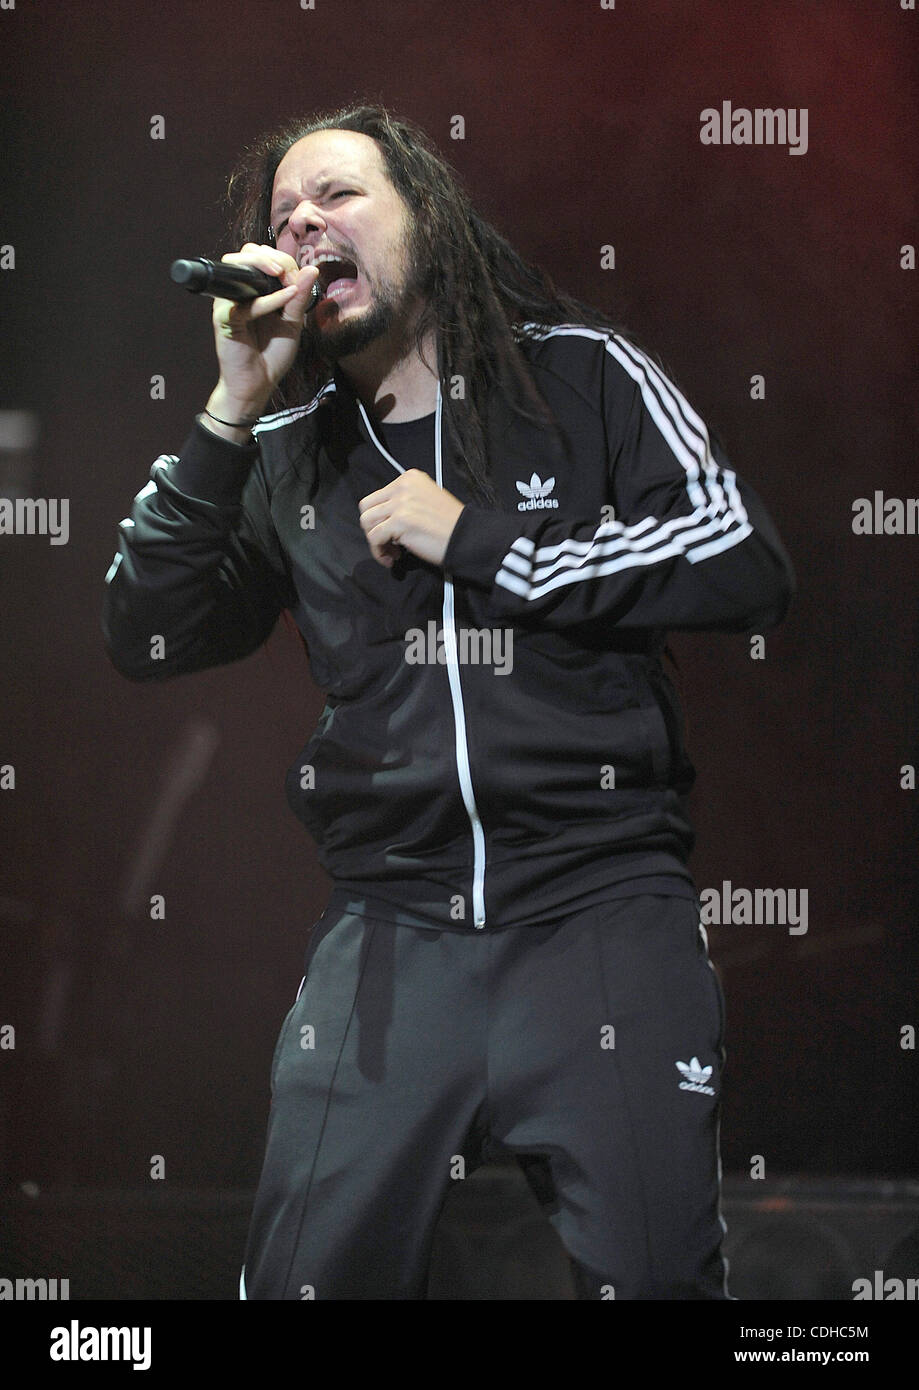 Febrero 2011 Fayetteville, Carolina del Norte, EE.UU. - El cantante Jonathan Davis de Korn la banda realiza en vivo como parte de la música como un arma Tour como se